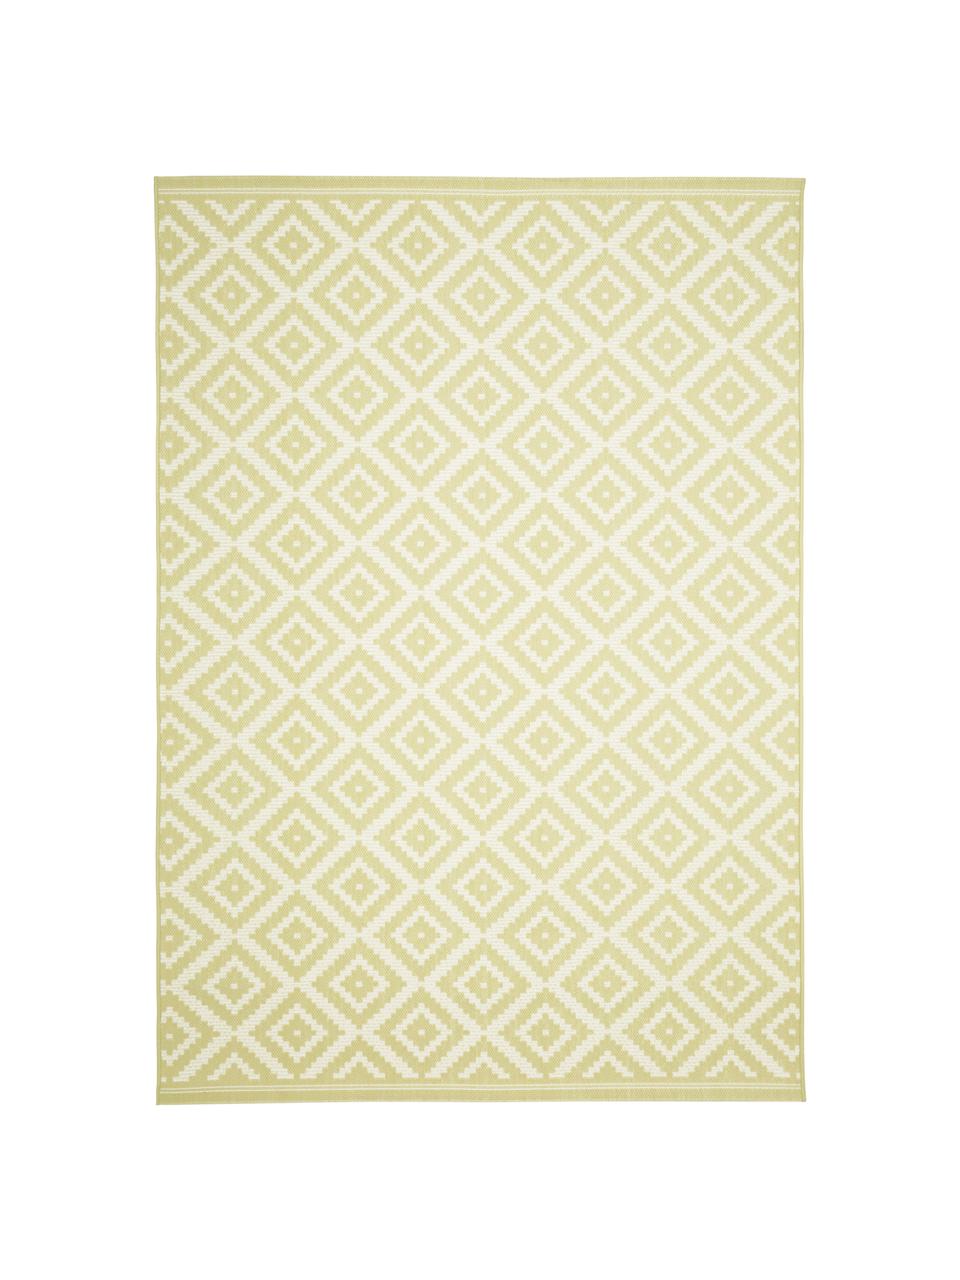 Gemusterter In- & Outdoor-Teppich Miami in Gelb/Weiß, 86% Polypropylen, 14% Polyester, Weiß, Gelb, B 200 x L 290 cm (Größe L)